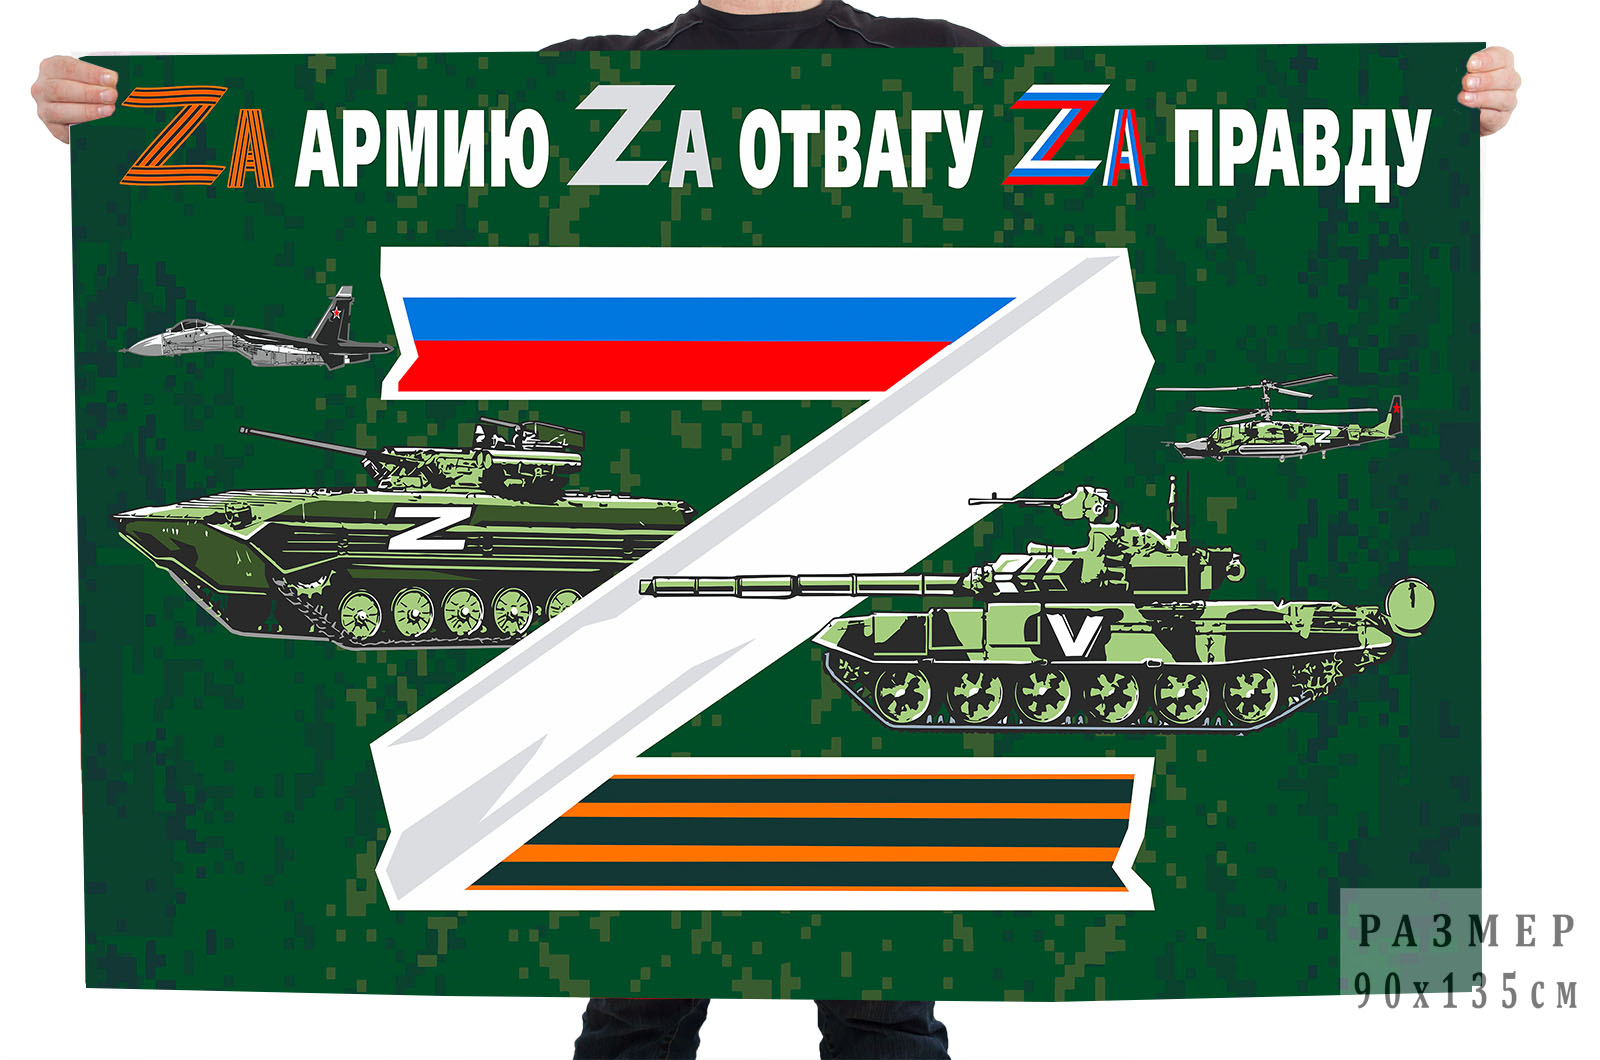 Зеленый флаг Zа армию